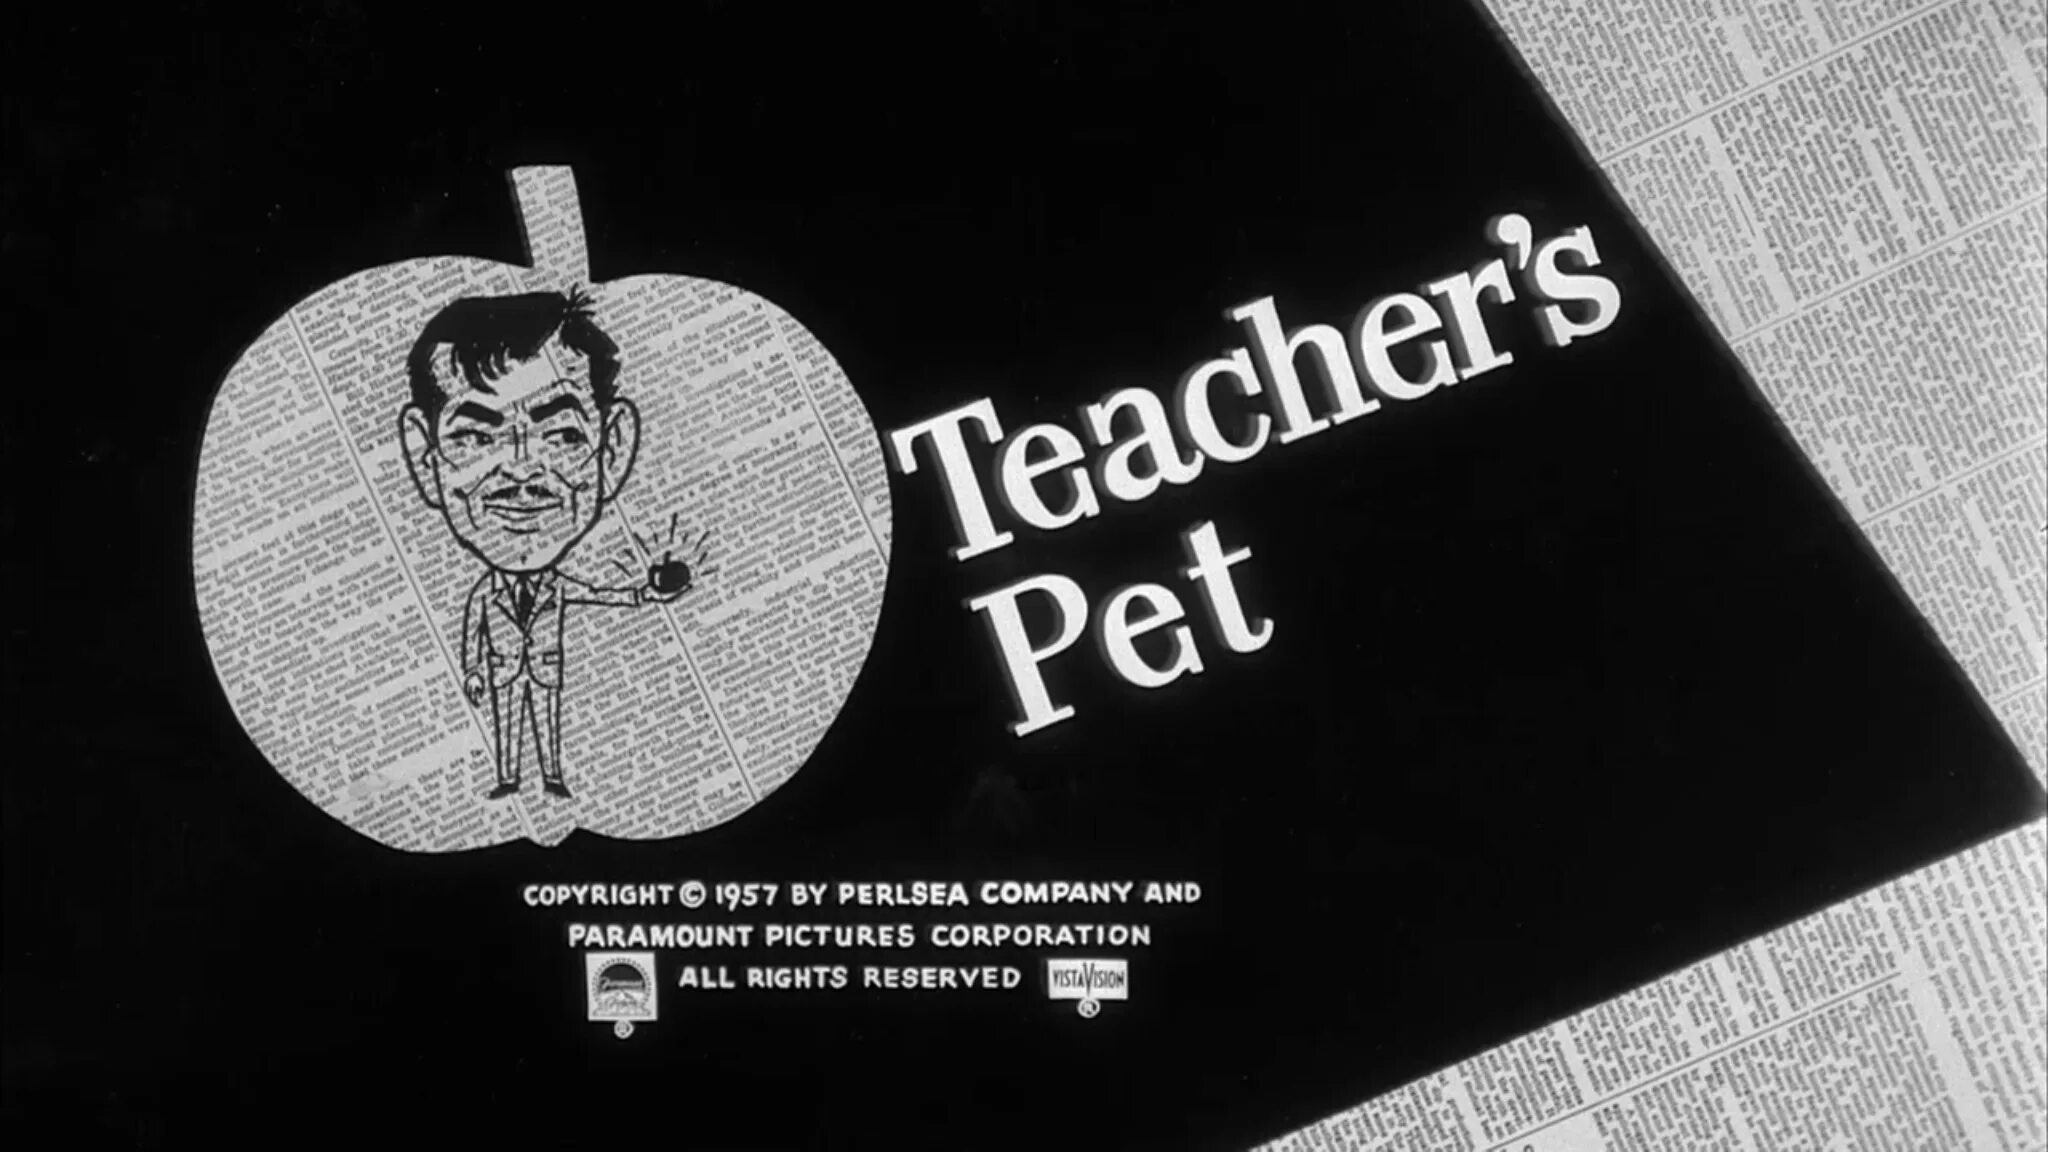 Любимец учителя (2004) Постер. Питомец учителя the teachers Pet. Teachers pet фф